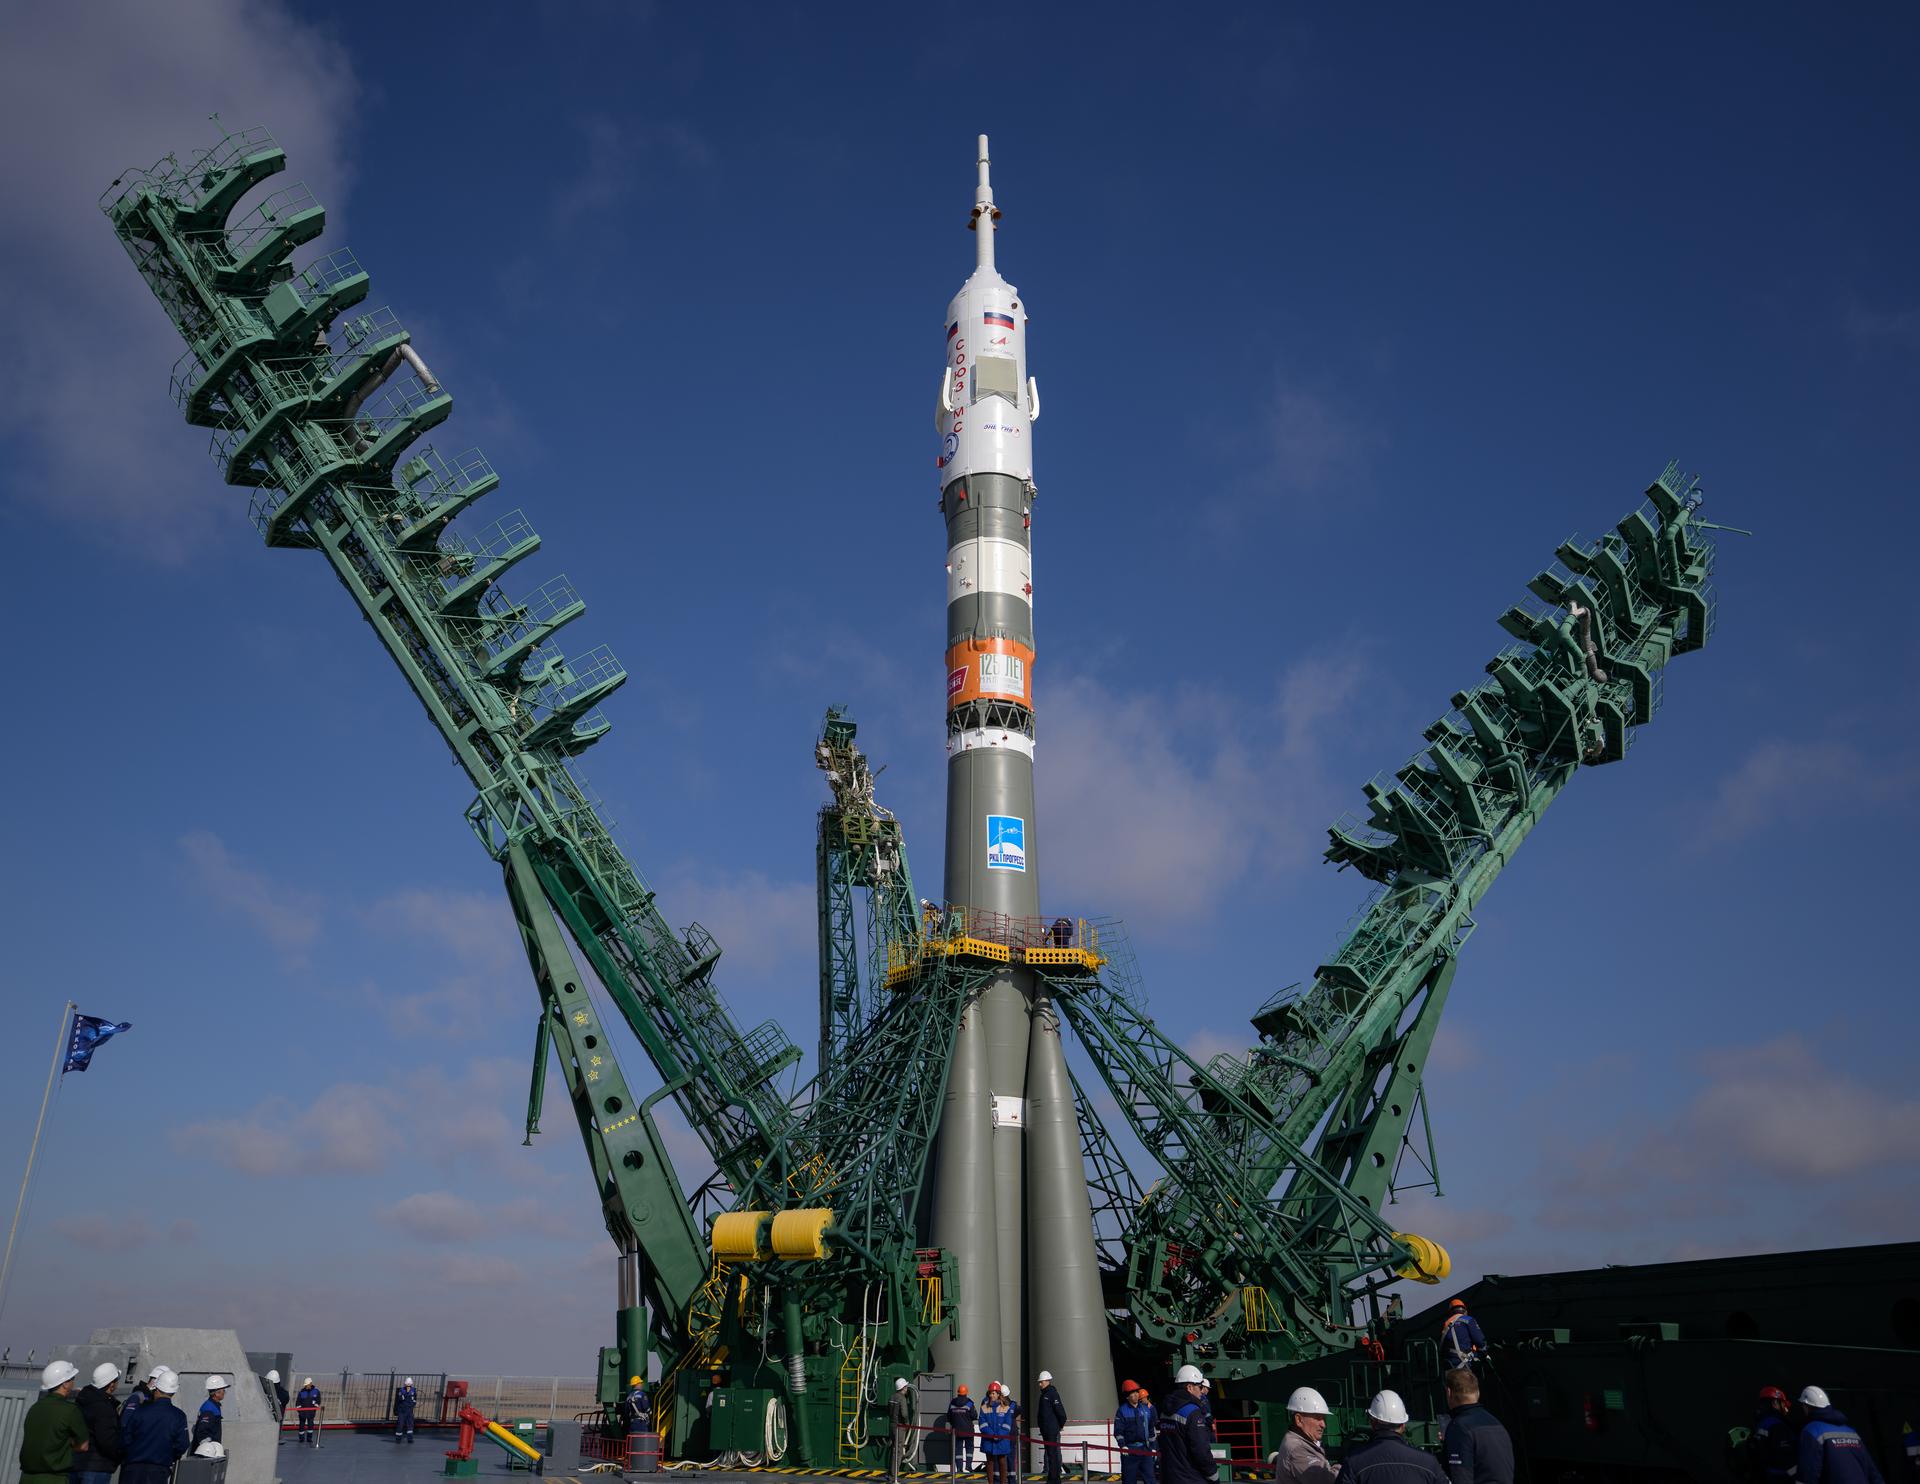 Bộ ảnh quyền lực: Nga nâng tên lửa Soyuz lên bệ, chuẩn bị chuyến bay lịch sử - Ảnh 6.